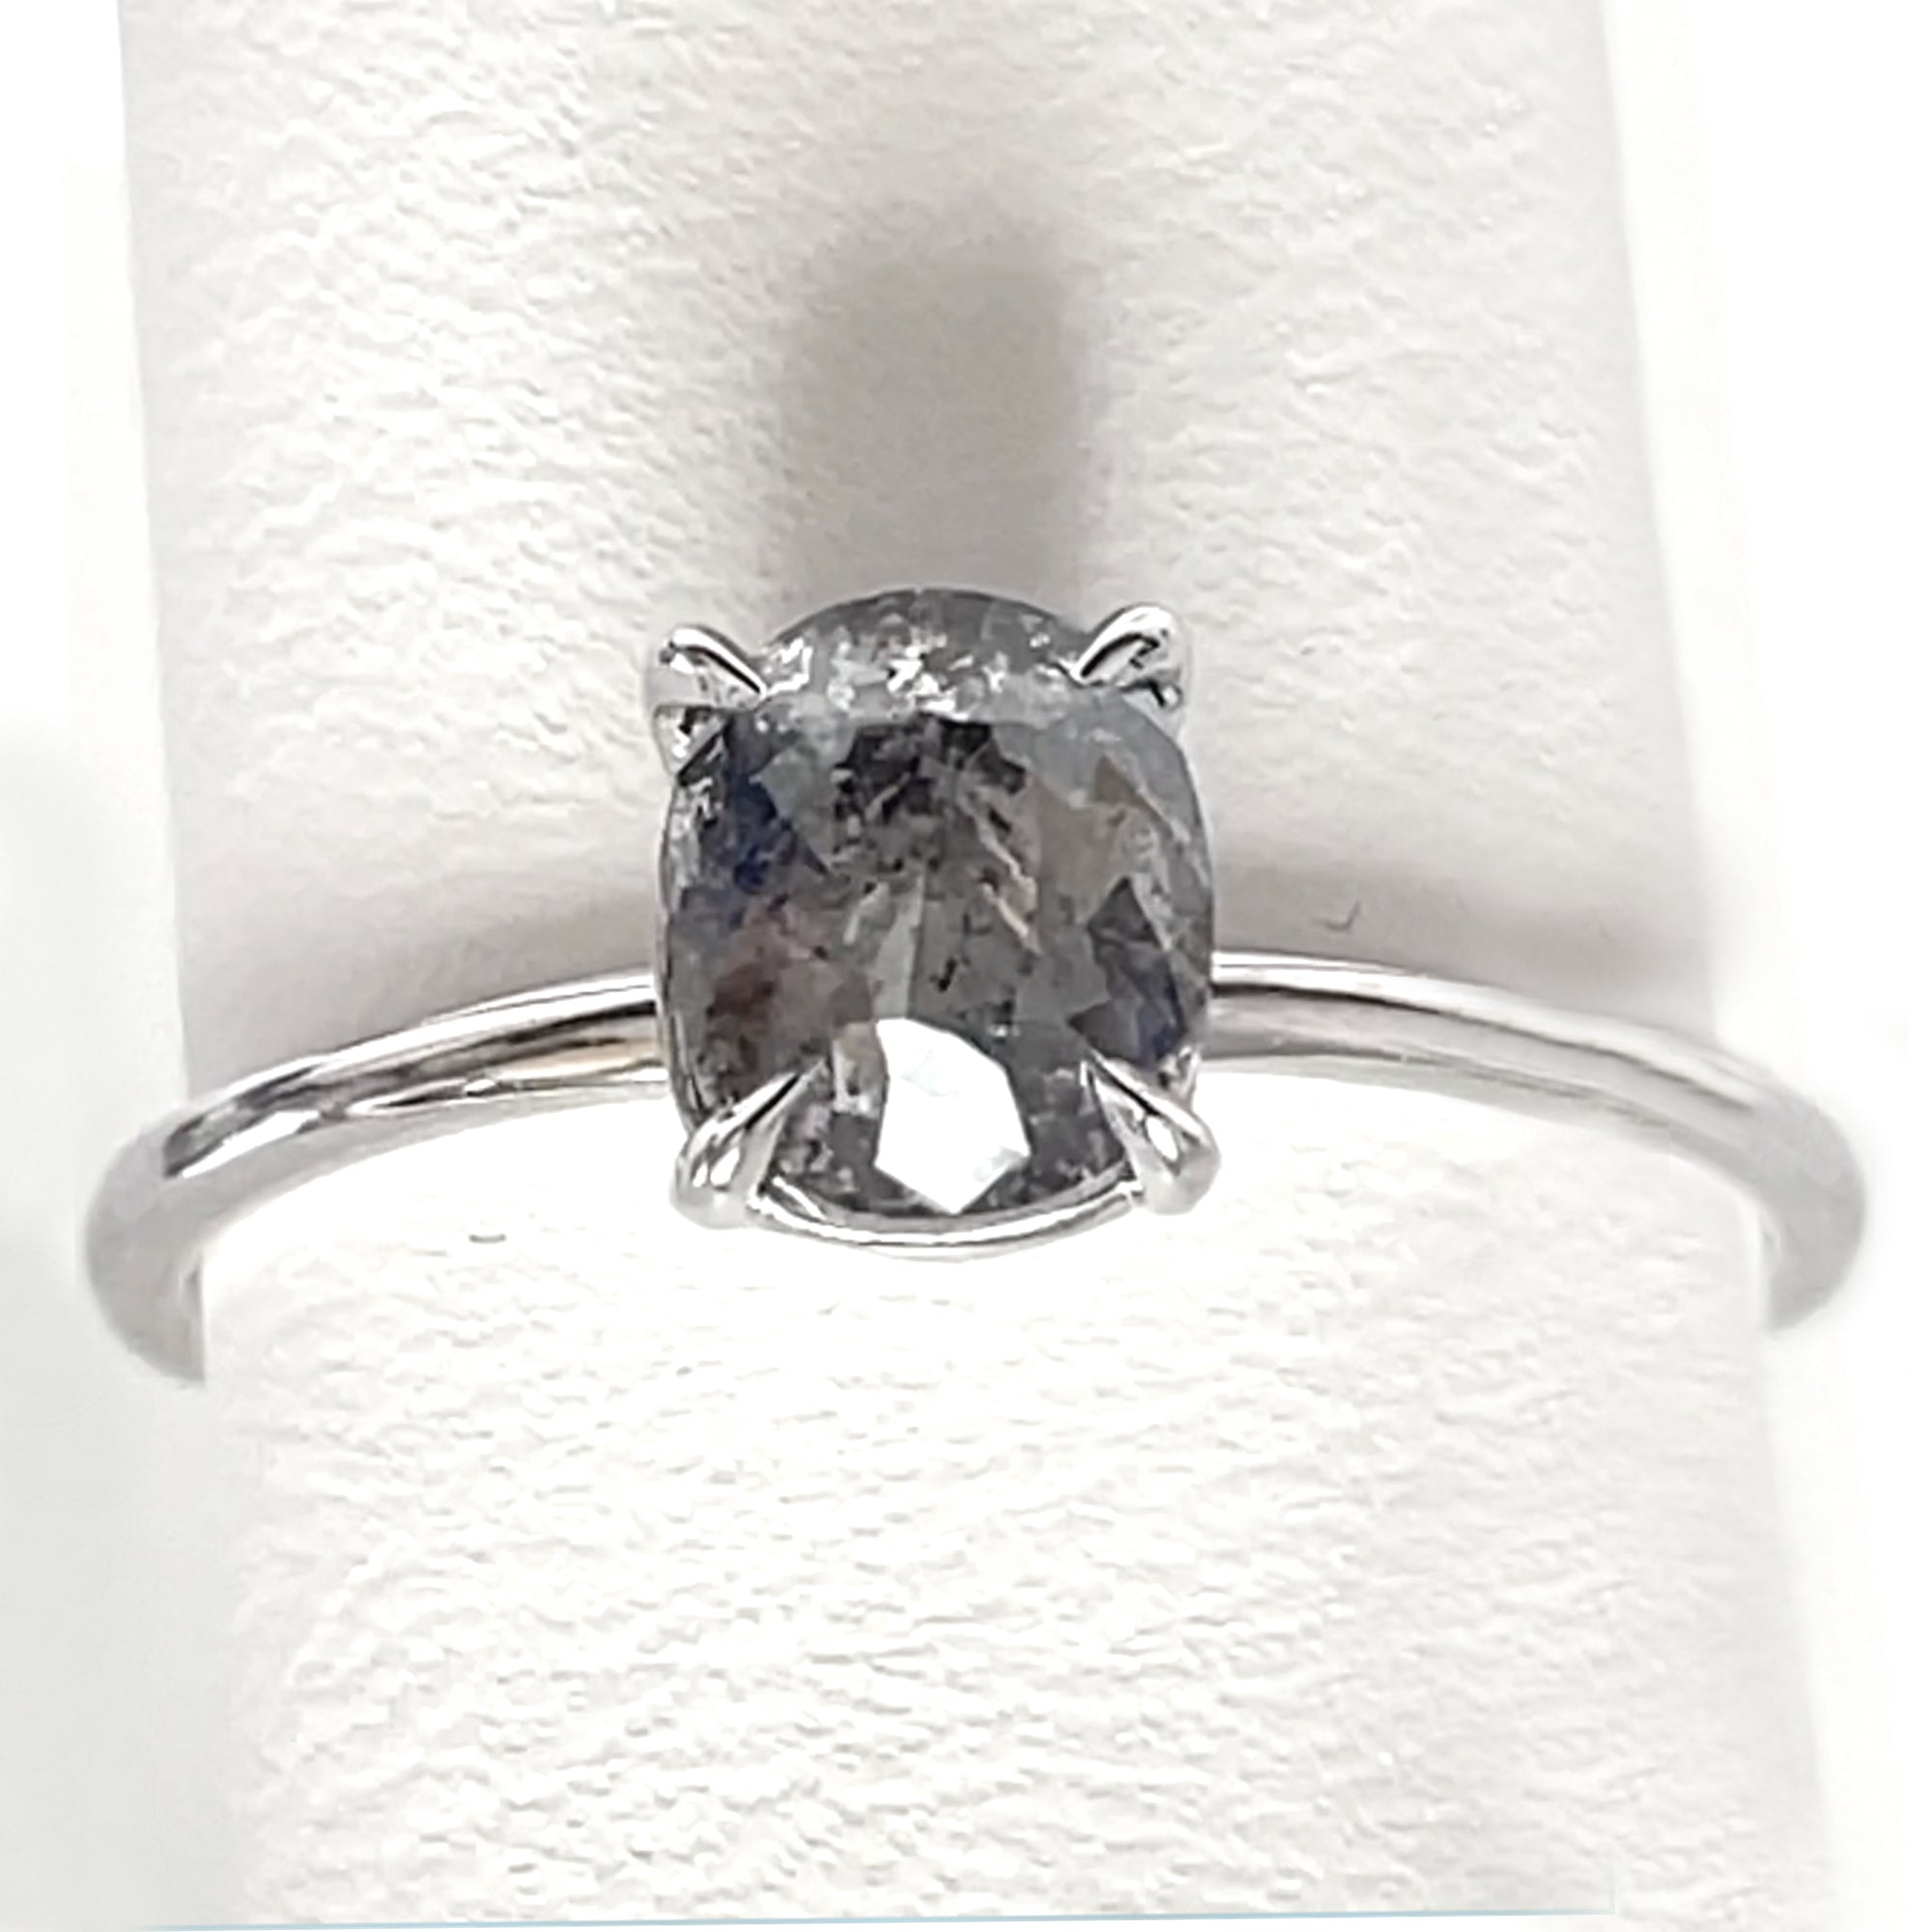 18K White Gold Diamond Engagement Ring, Oval Salt And Pepper Diamond Ring